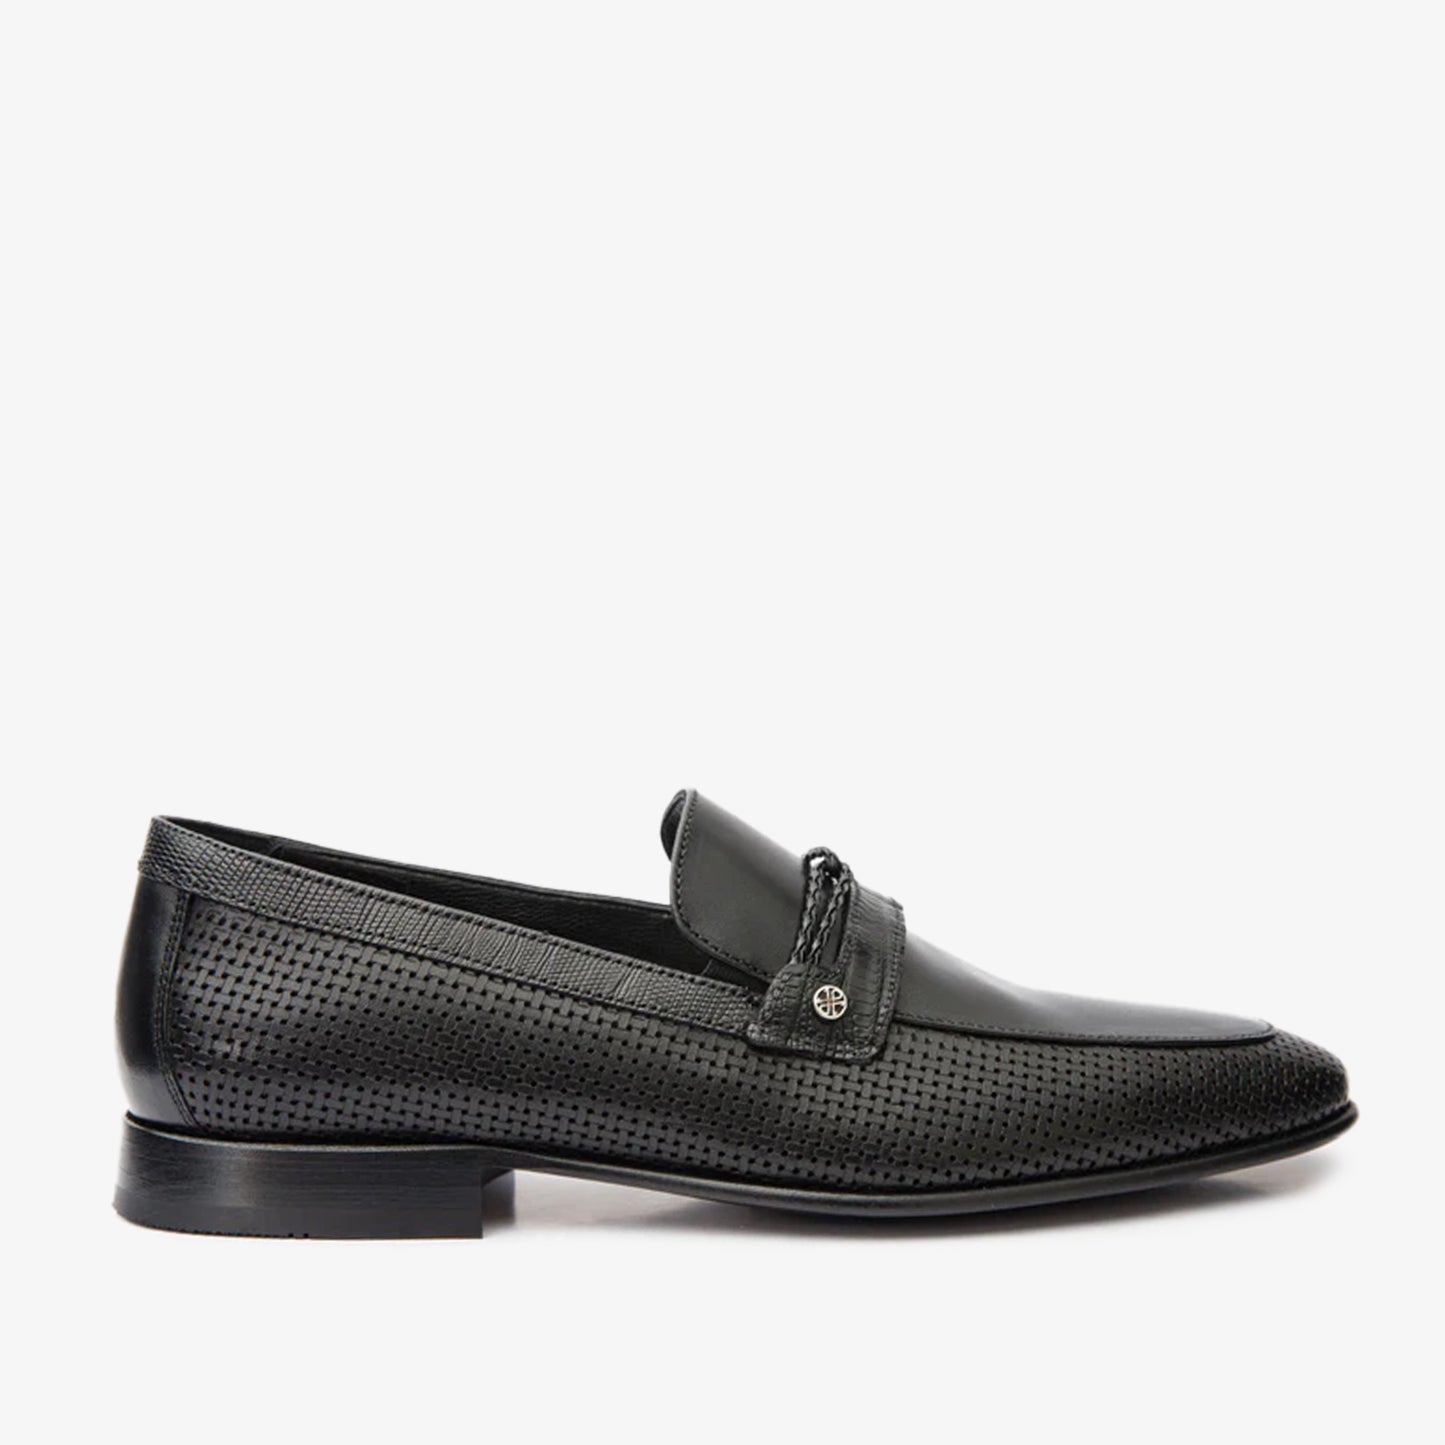 The Acerra Black Leather Loafer Men Shoe